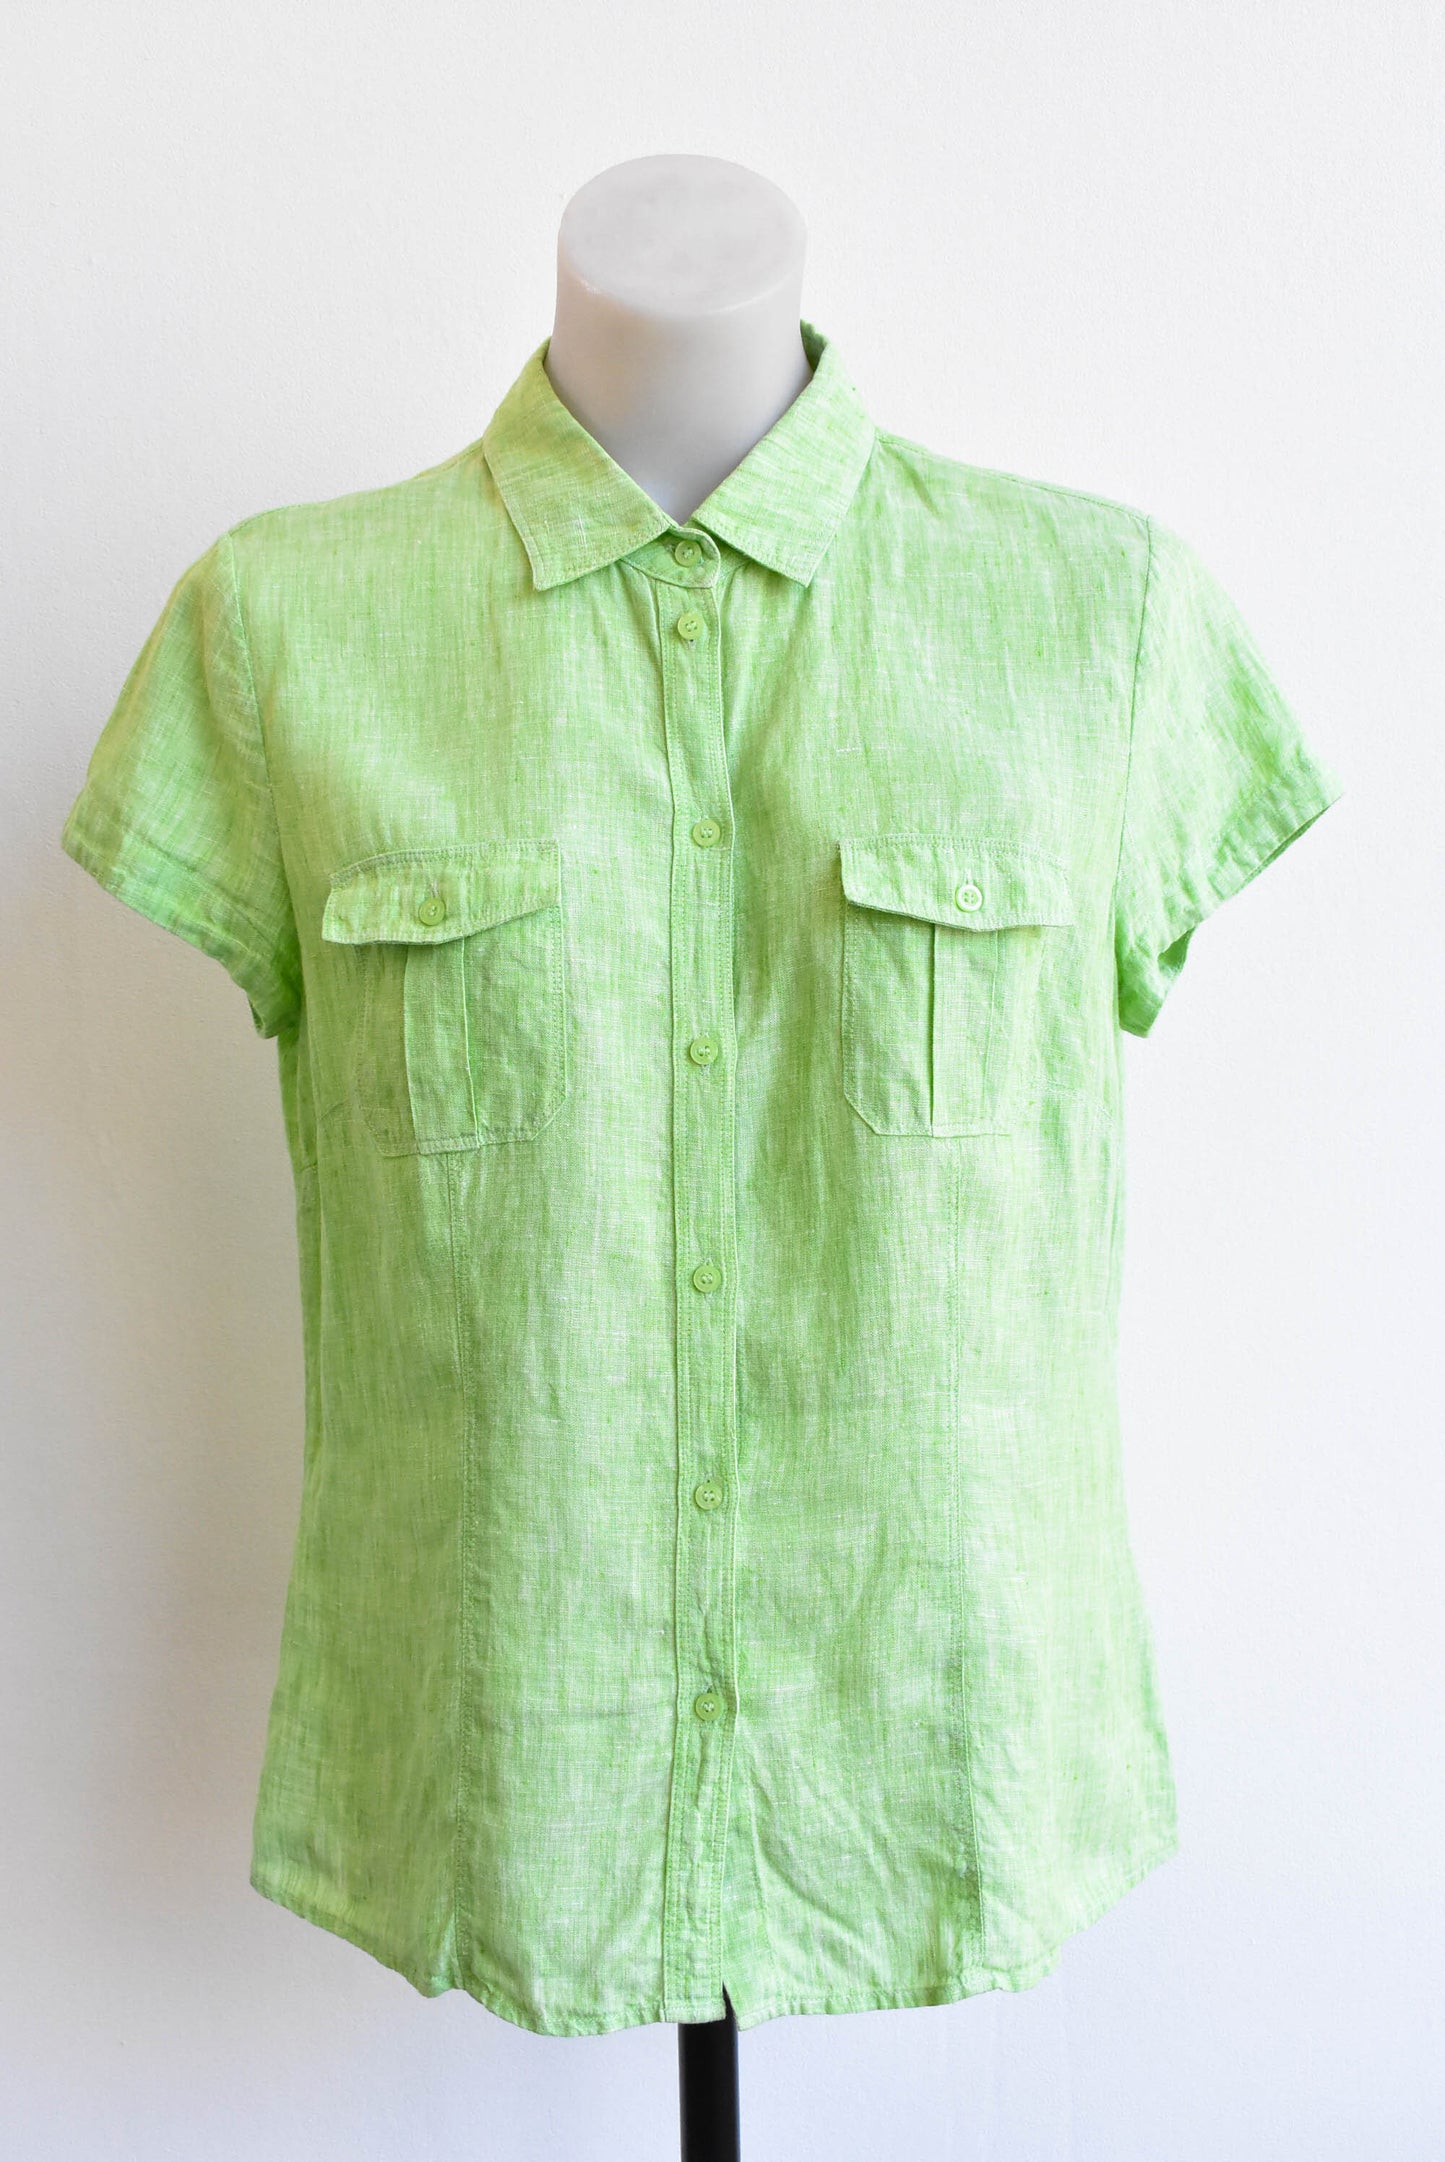 Sportscraft lime green linen short-sleeved shirt, size S